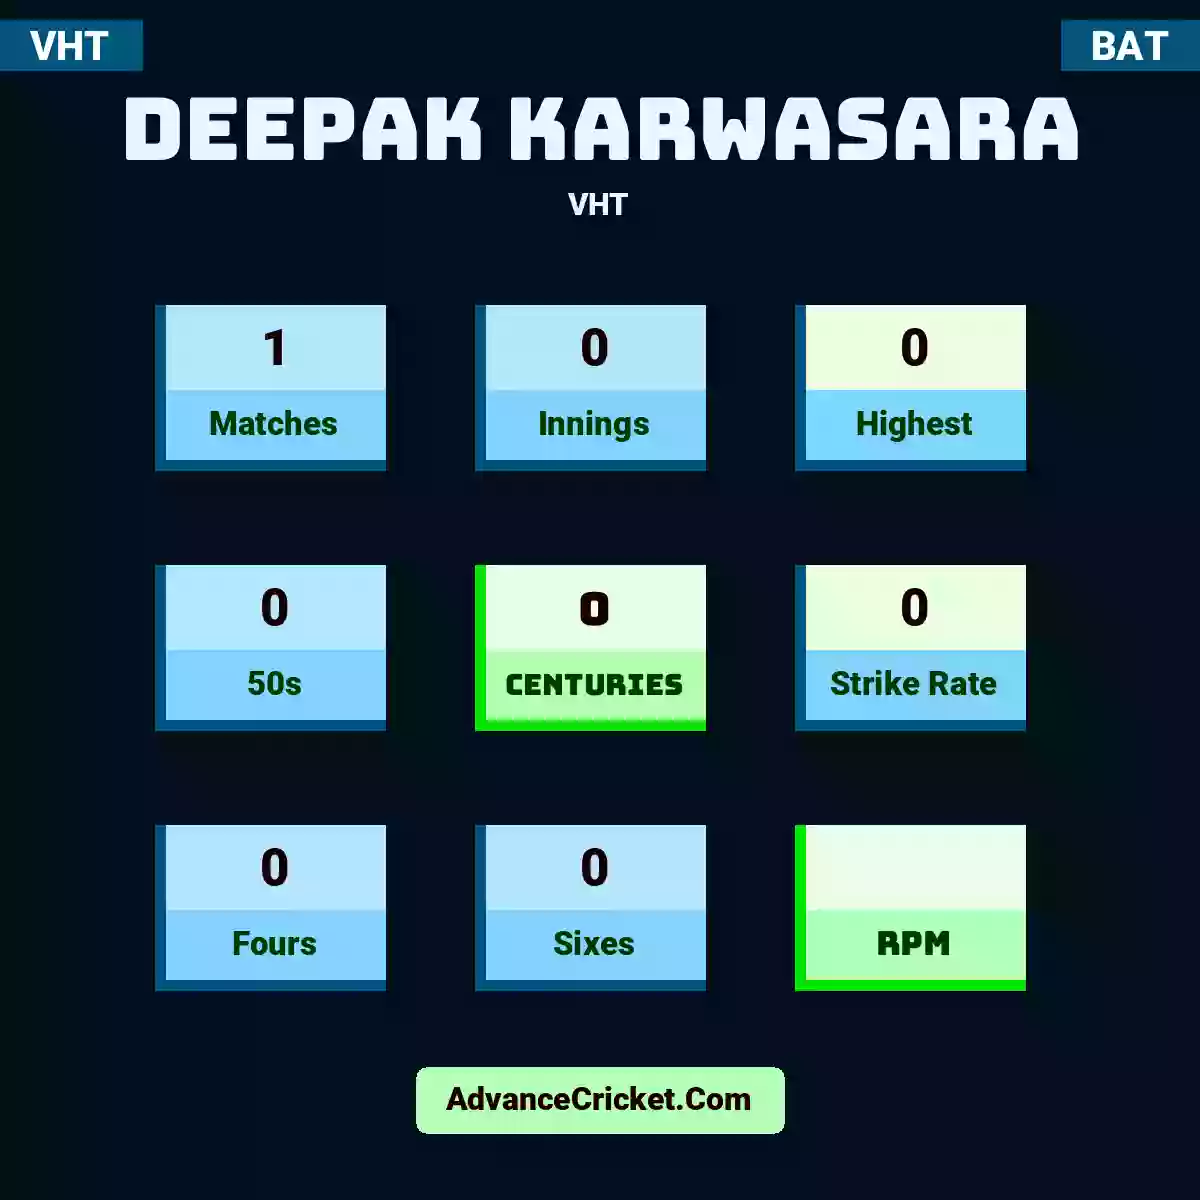 Deepak Karwasara VHT , Deepak Karwasara played 1 matches, scored 0 runs as highest, 0 half-centuries, and 0 centuries, with a strike rate of 0. D.Karwasara hit 0 fours and 0 sixes.